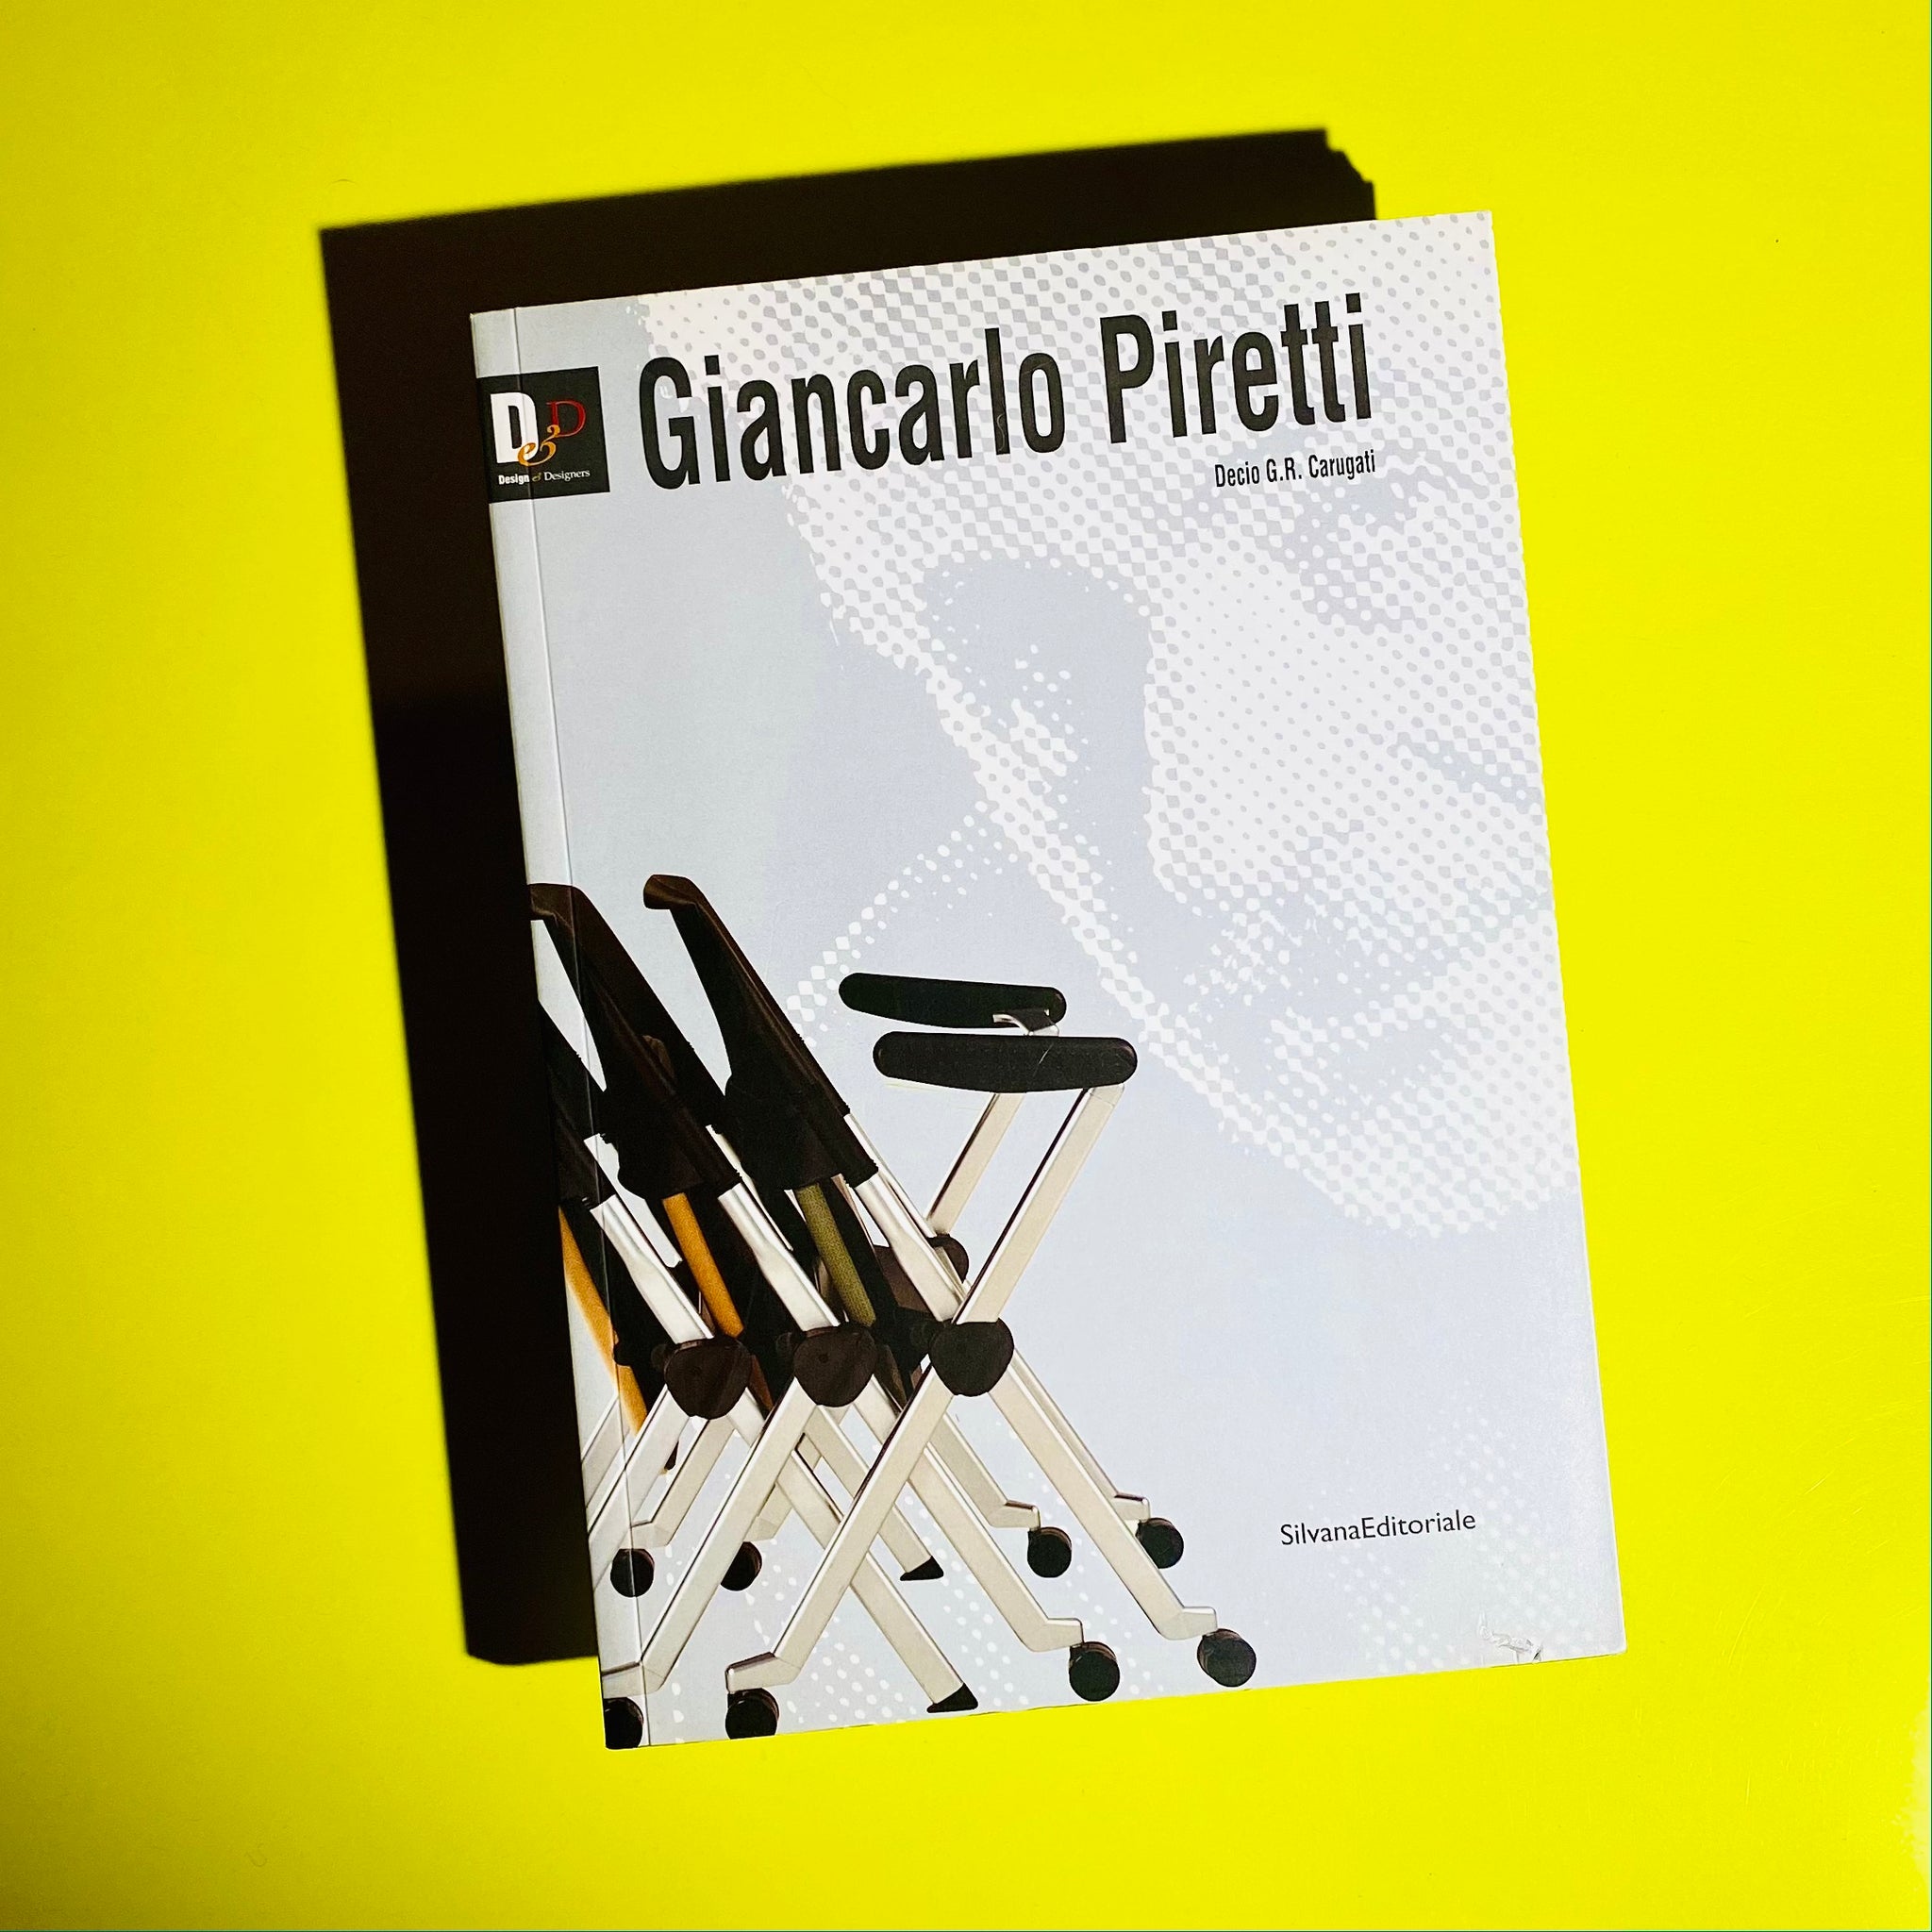 Giancarlo Piretti by Decio G.R. Carugati 1st ed. 2003